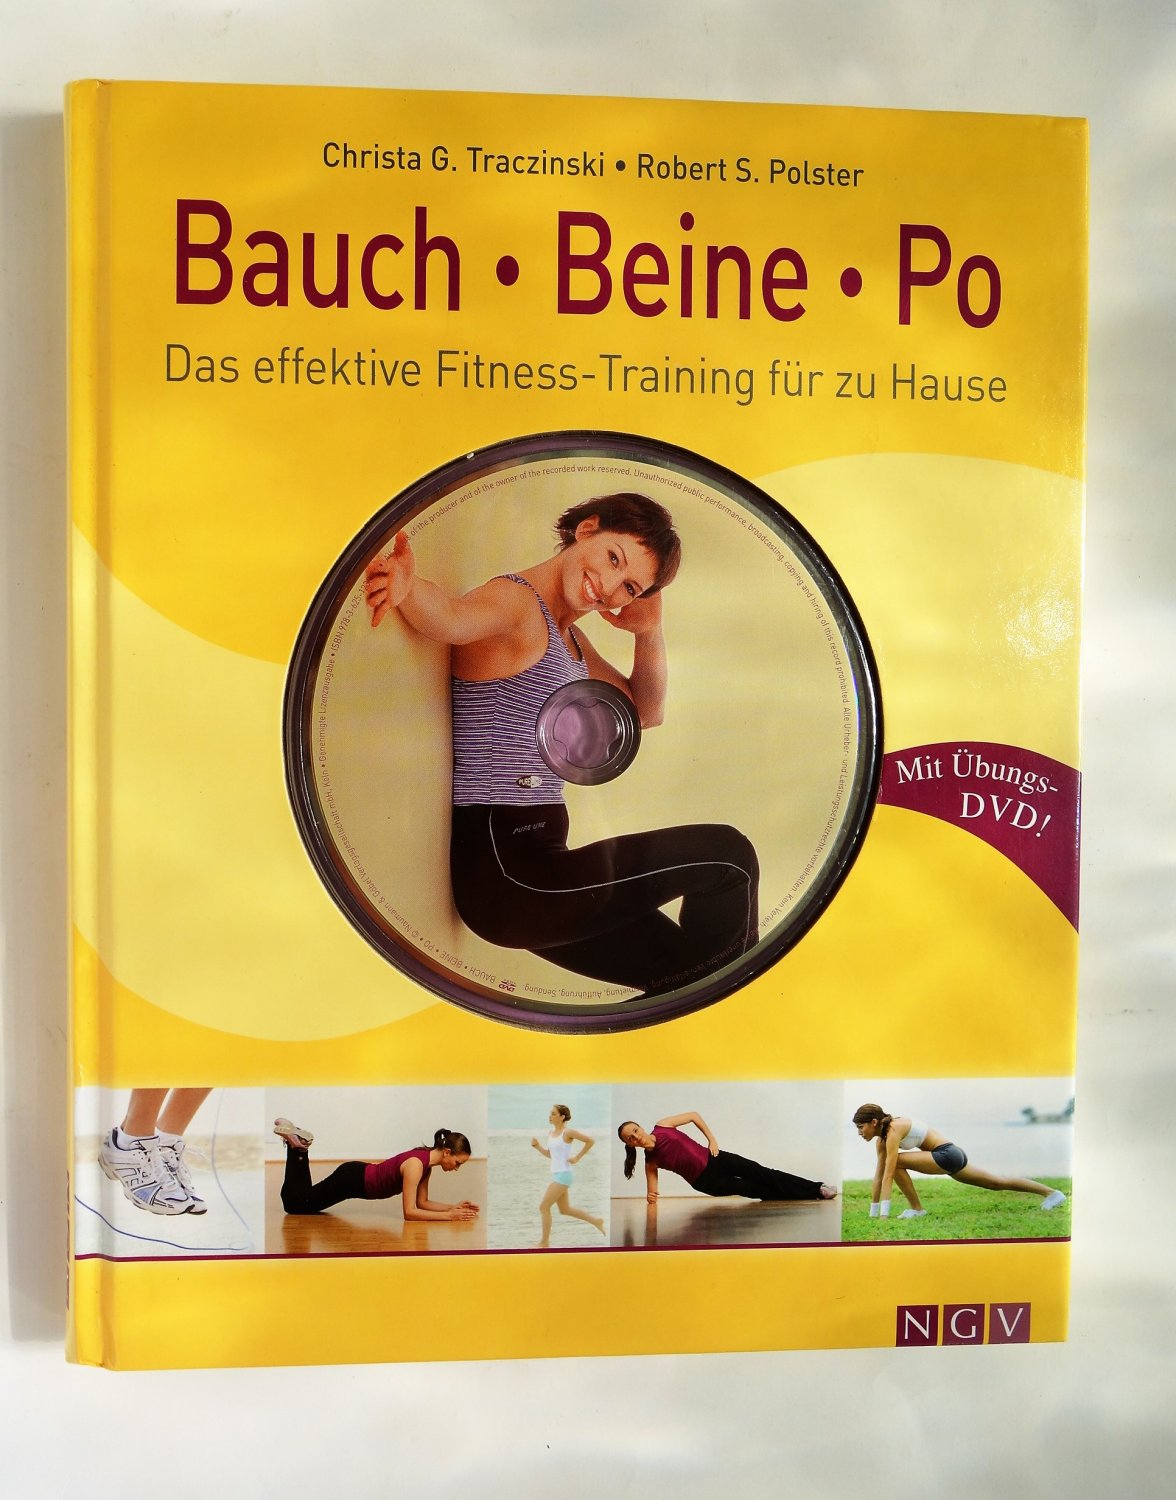 Pilates mit Übungs-DVD, Fitness Training für zu Hause